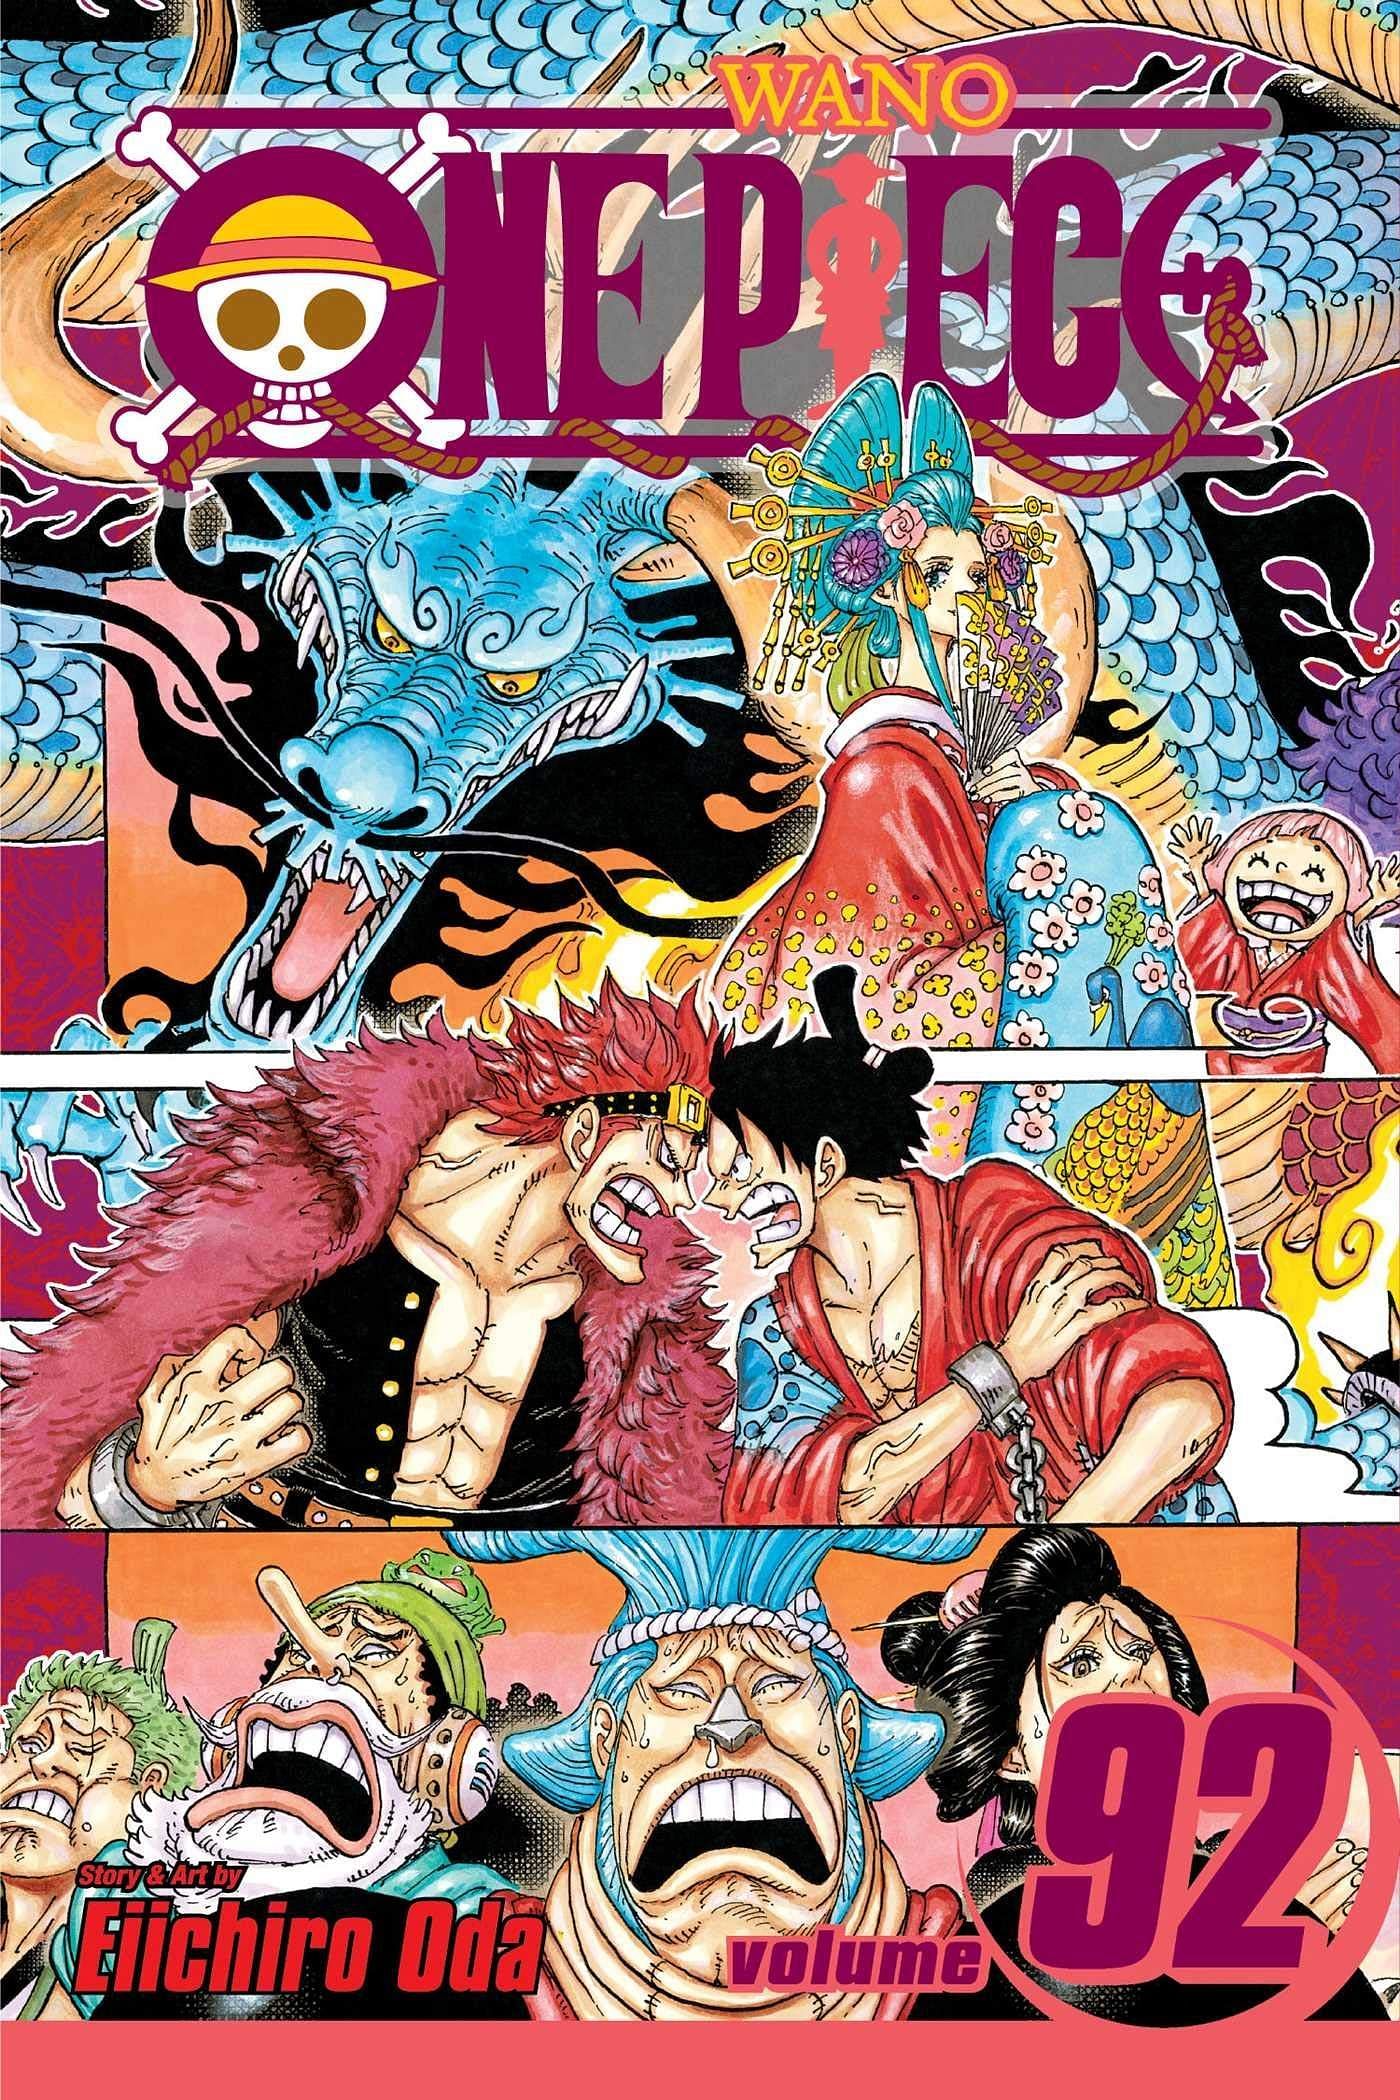 The cover art for One Piece Volume 92 (Image via Shueisha)